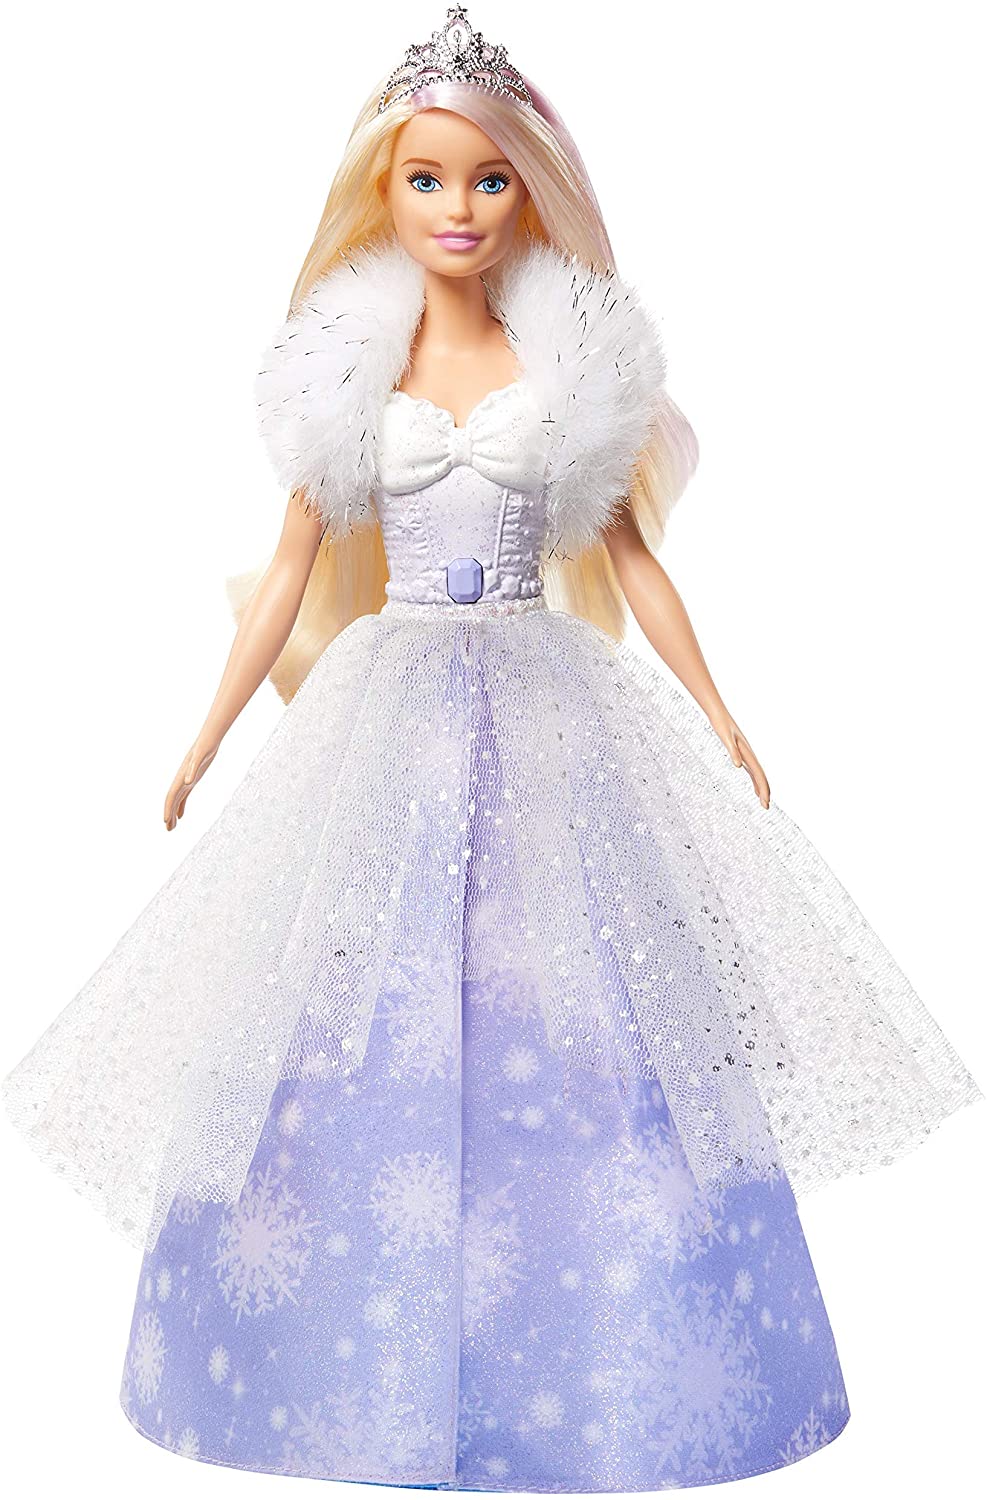 Barbie- Dreamtopia Bambola Principessa Magia d'inverno Giocattolo per Bambini 3+ Anni, GKH26